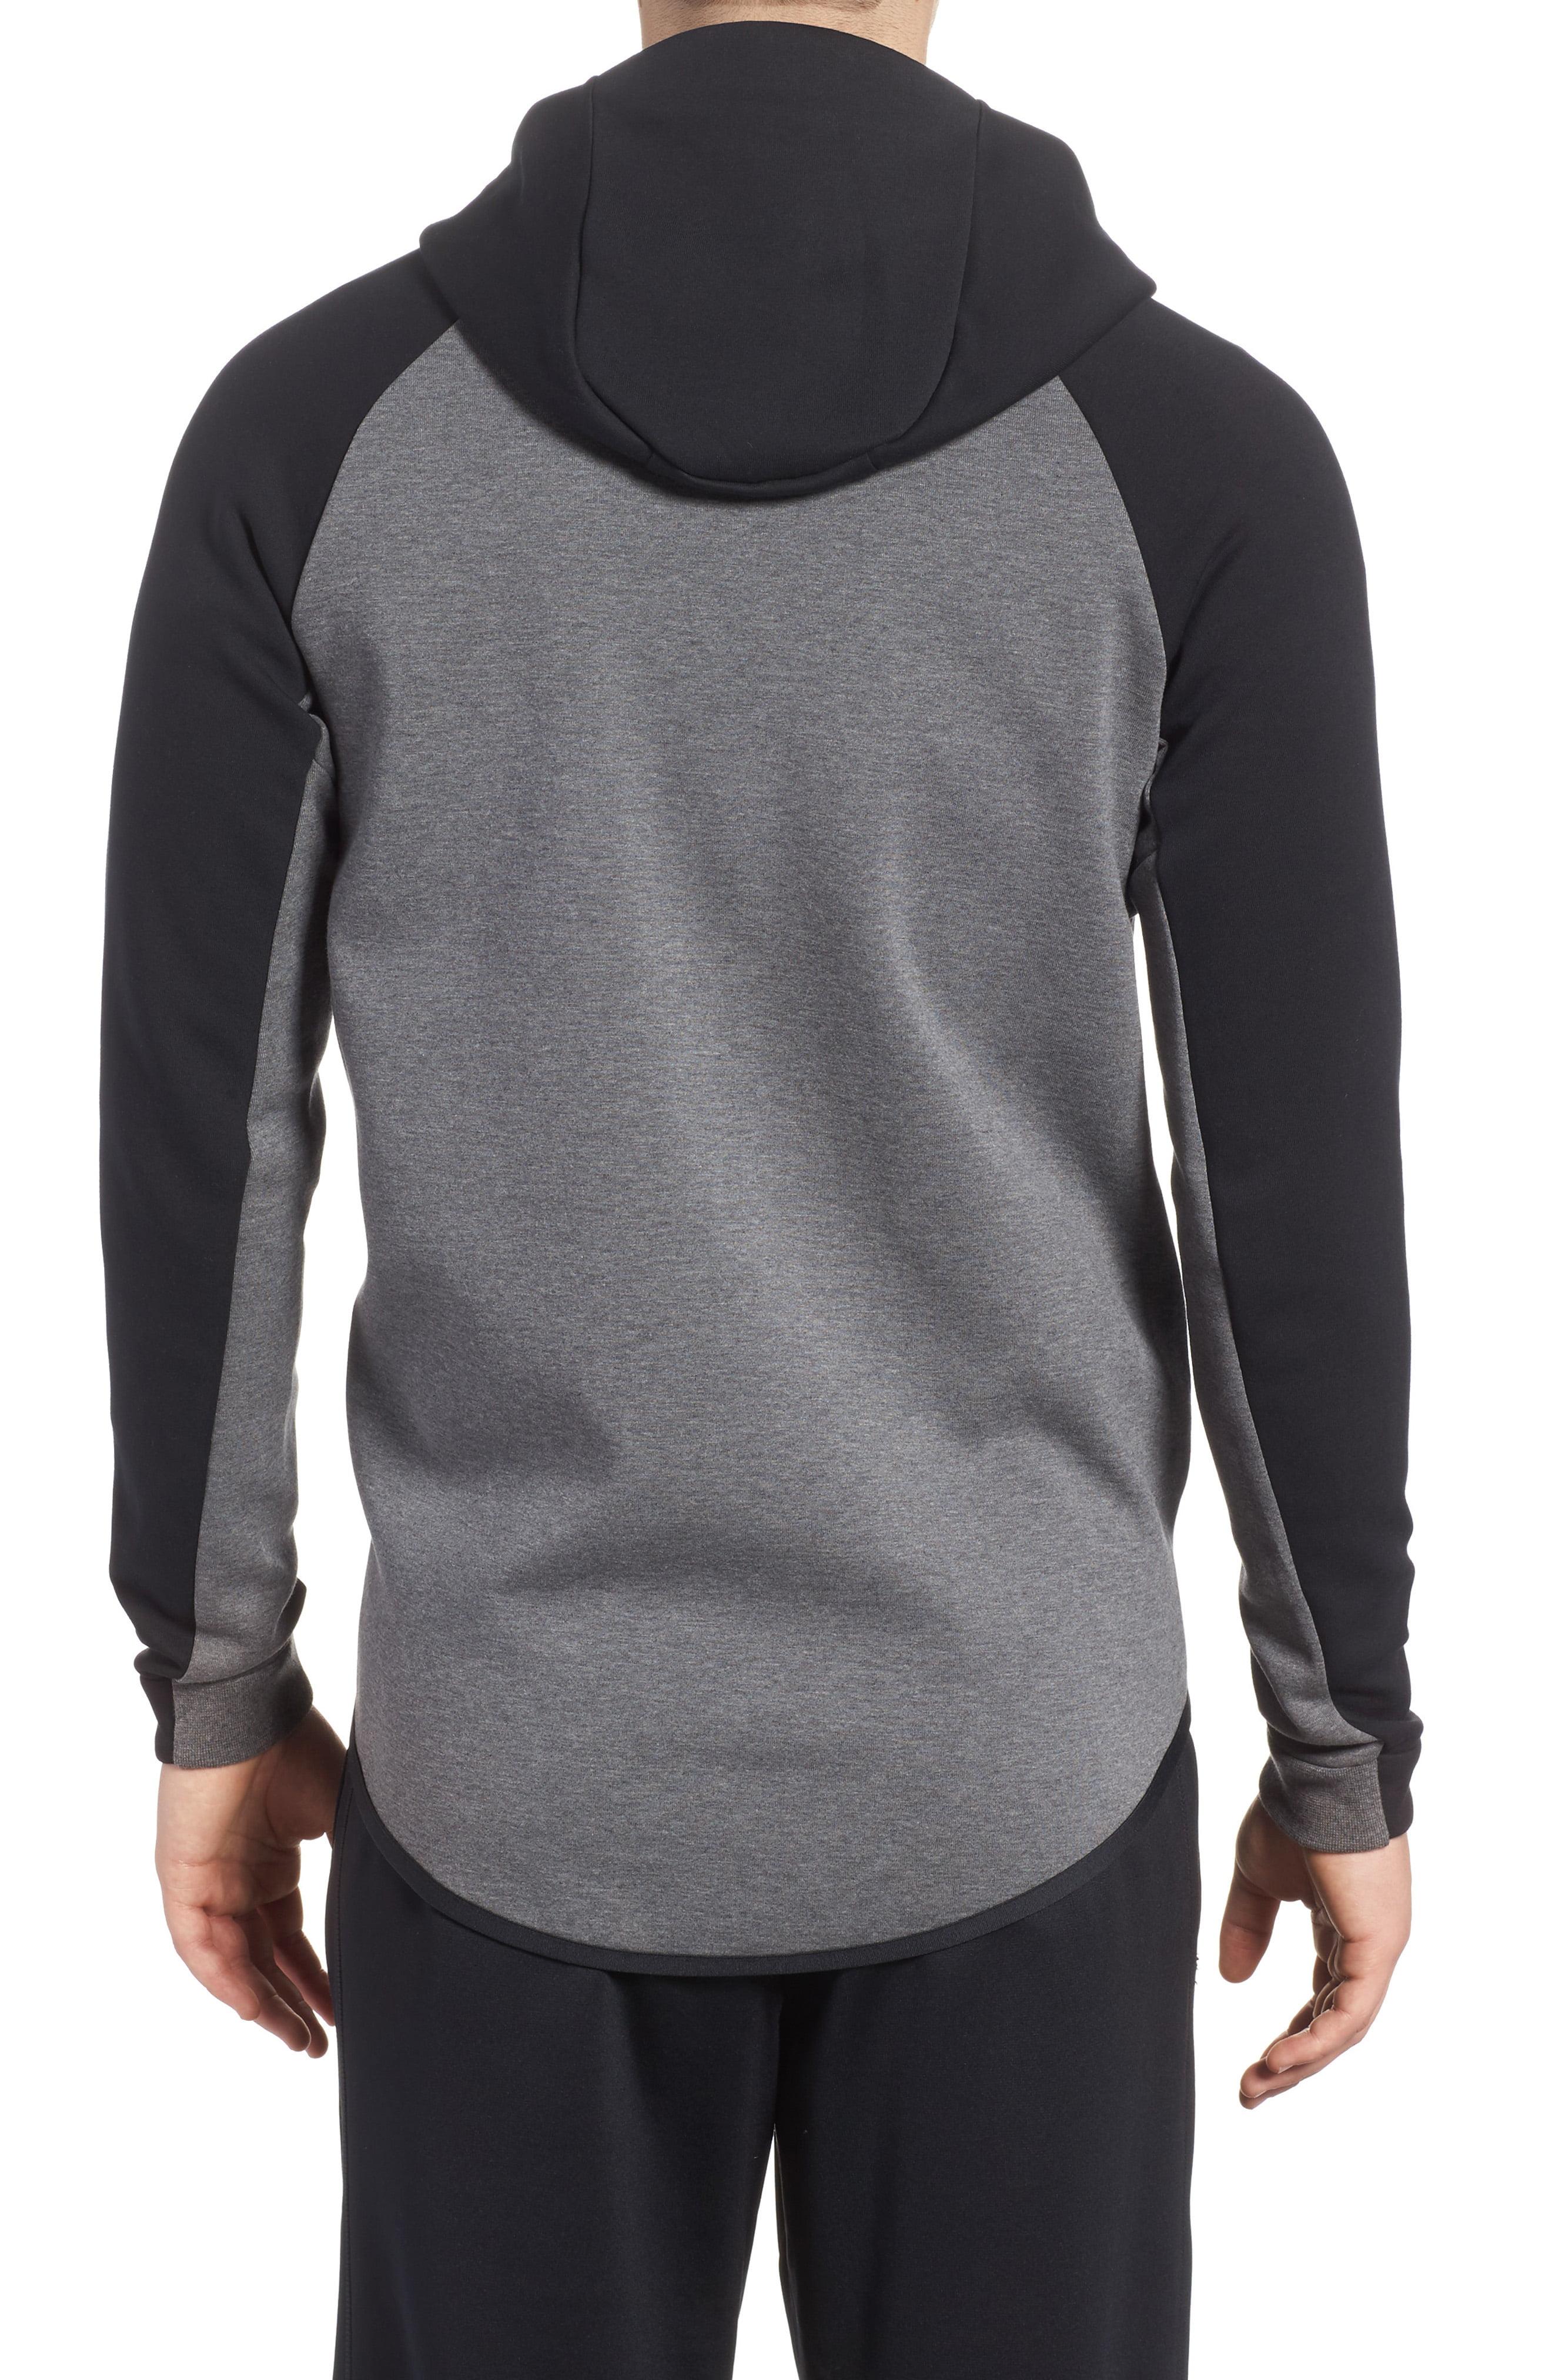 Nike Tech Fleece Hooded Jacket in Gray for Men - Lyst